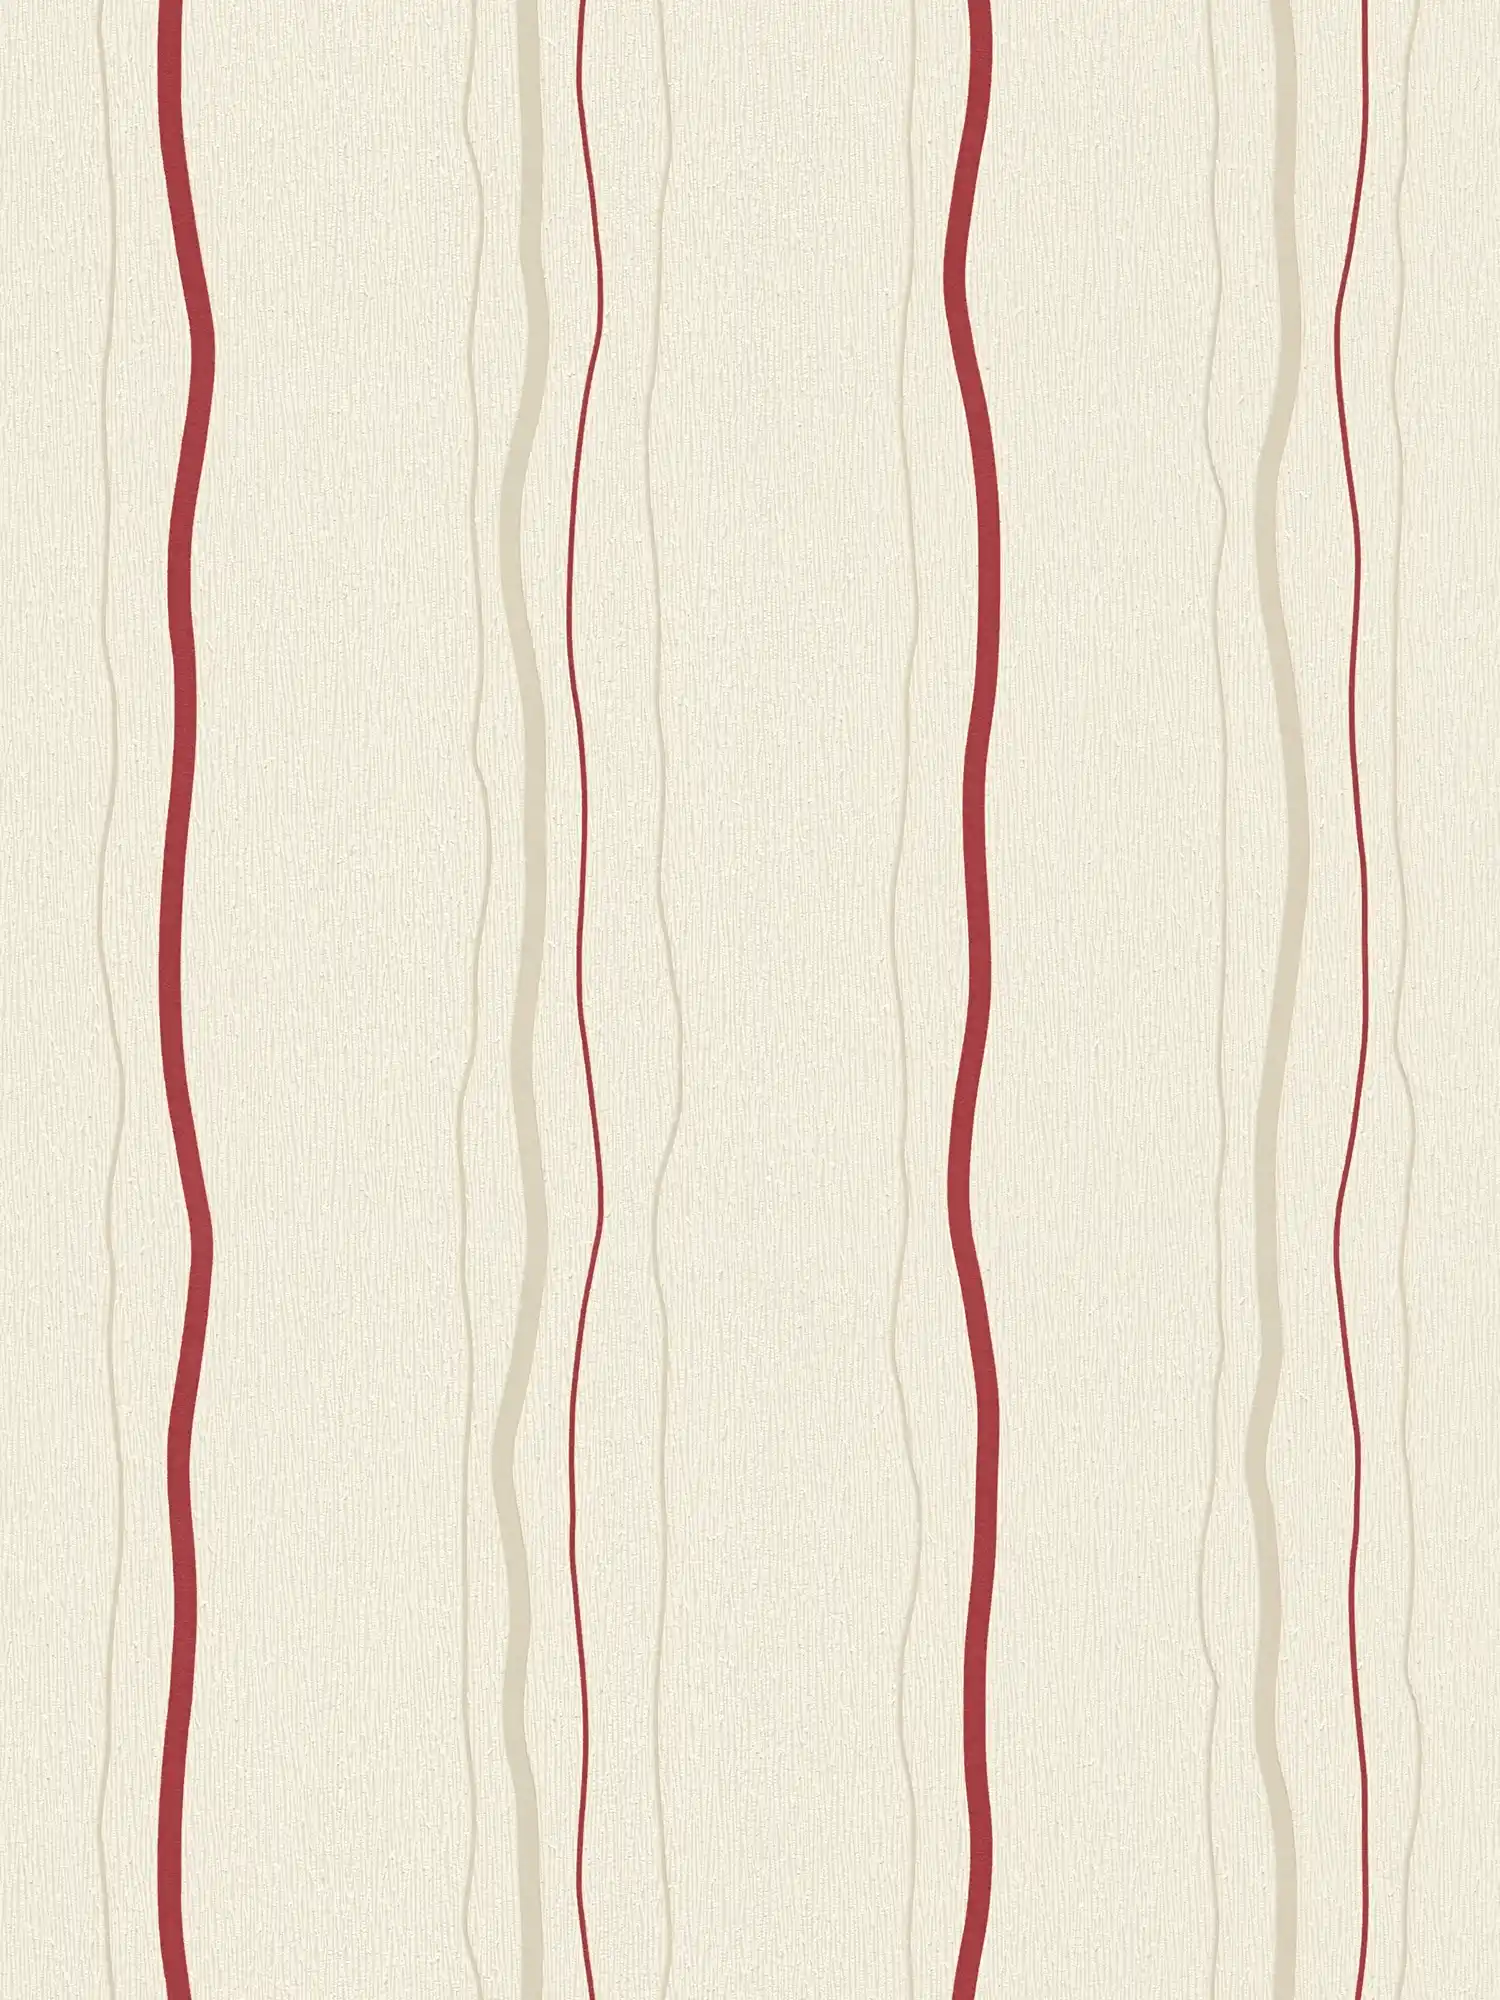 Behang met lijnenspel verticale strepen - crème, rood, beige
